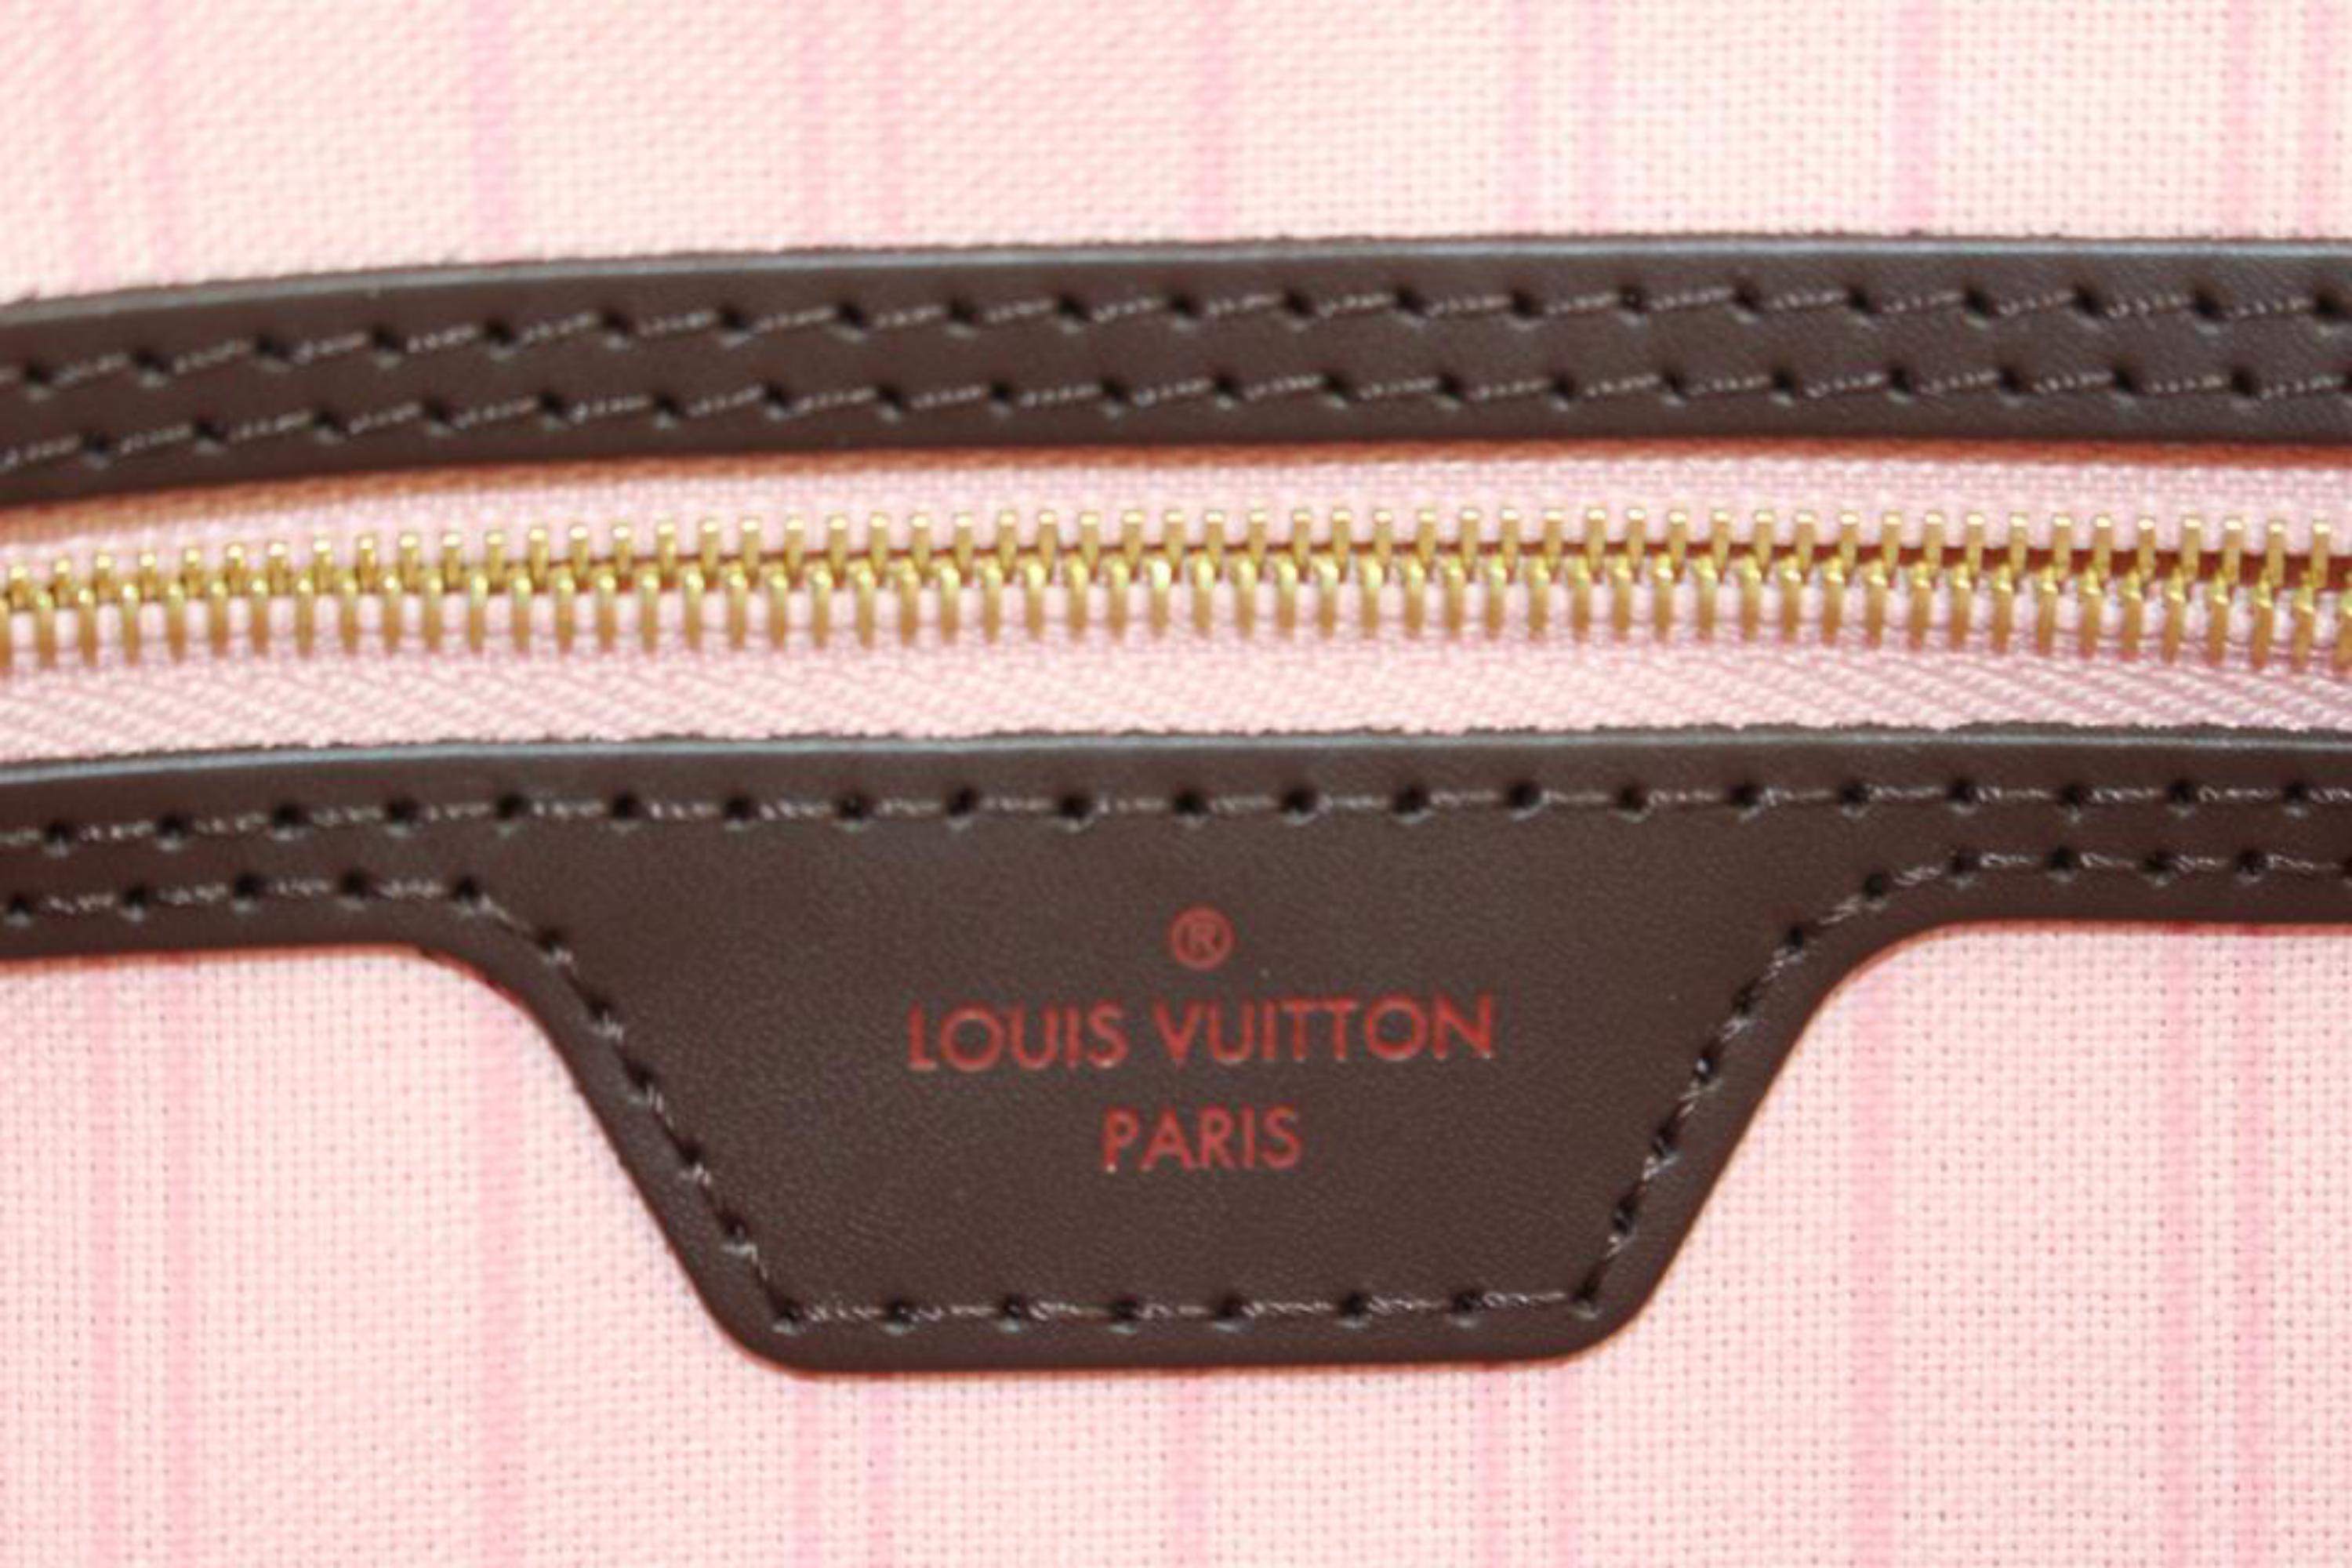 Louis Vuitton Damier Ebene Ballerine Pink Neverfull MM Tote Bag 72lv225s For Sale 2